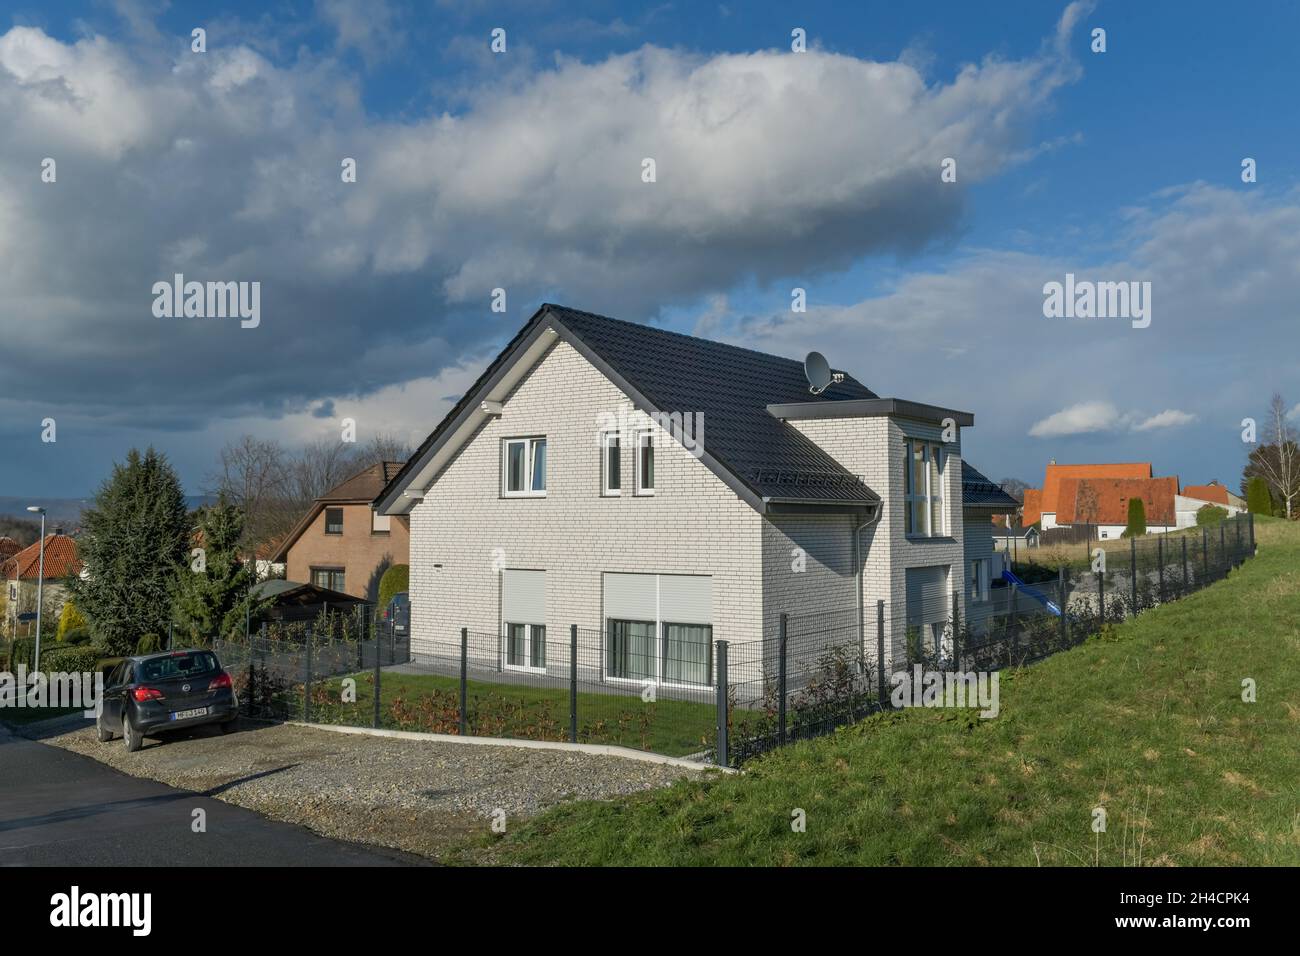 Einfamilienhaus, Vlotho, Kreis Herford, Ostwestfalen, Nordrhein-Westfalen, Deutschland Stock Photo